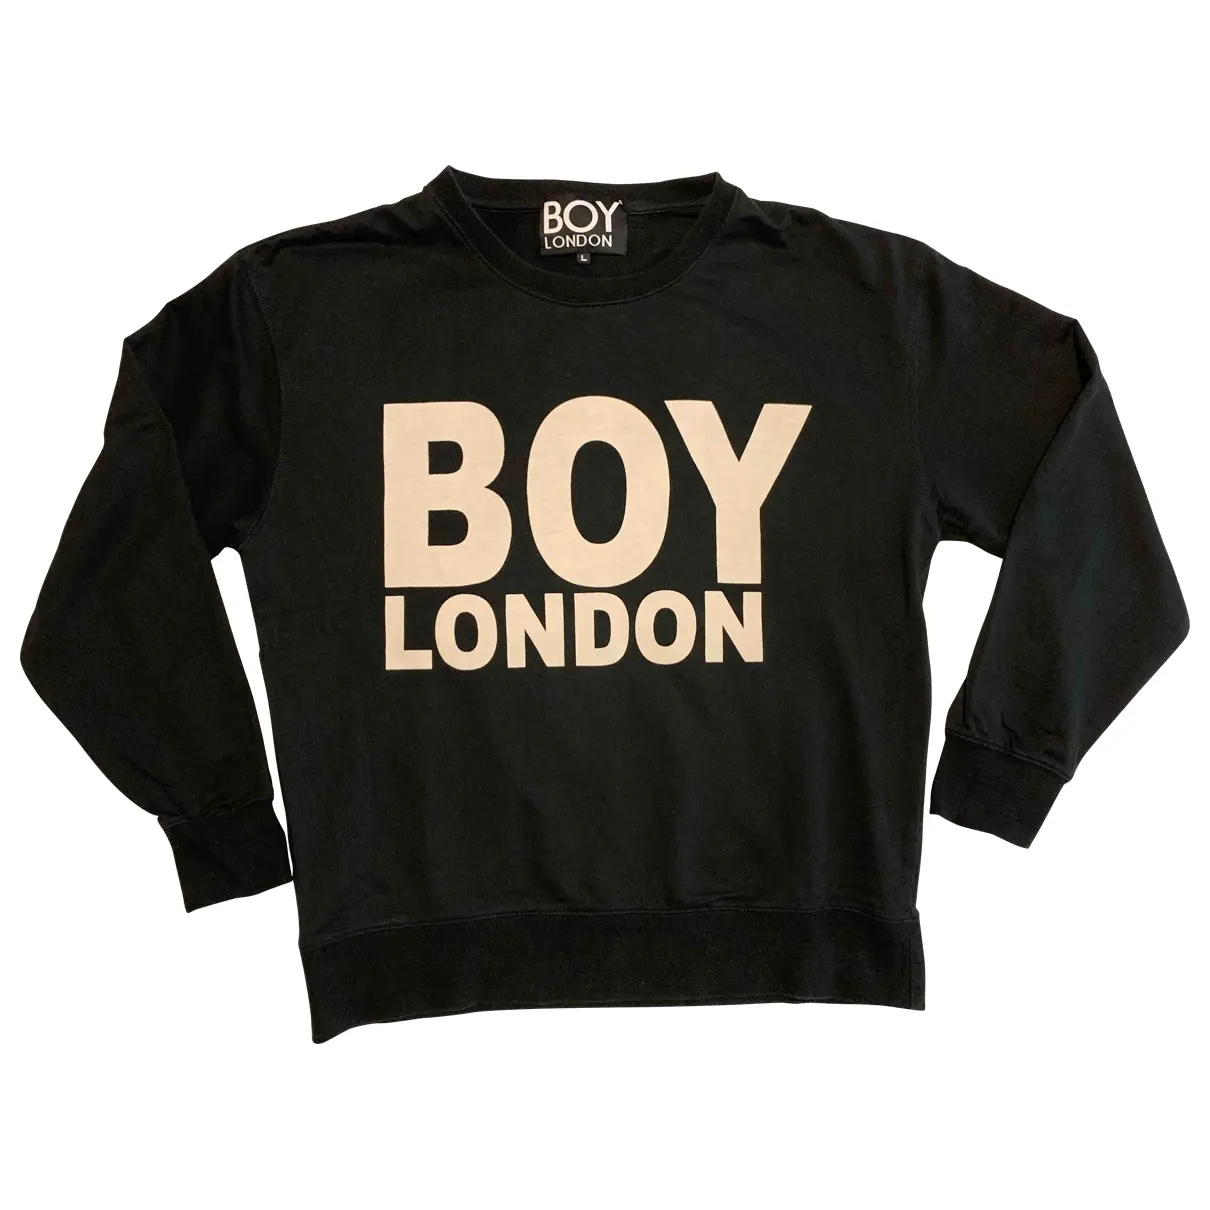 Black Cotton Knitwear & Sweatshirt Boy London